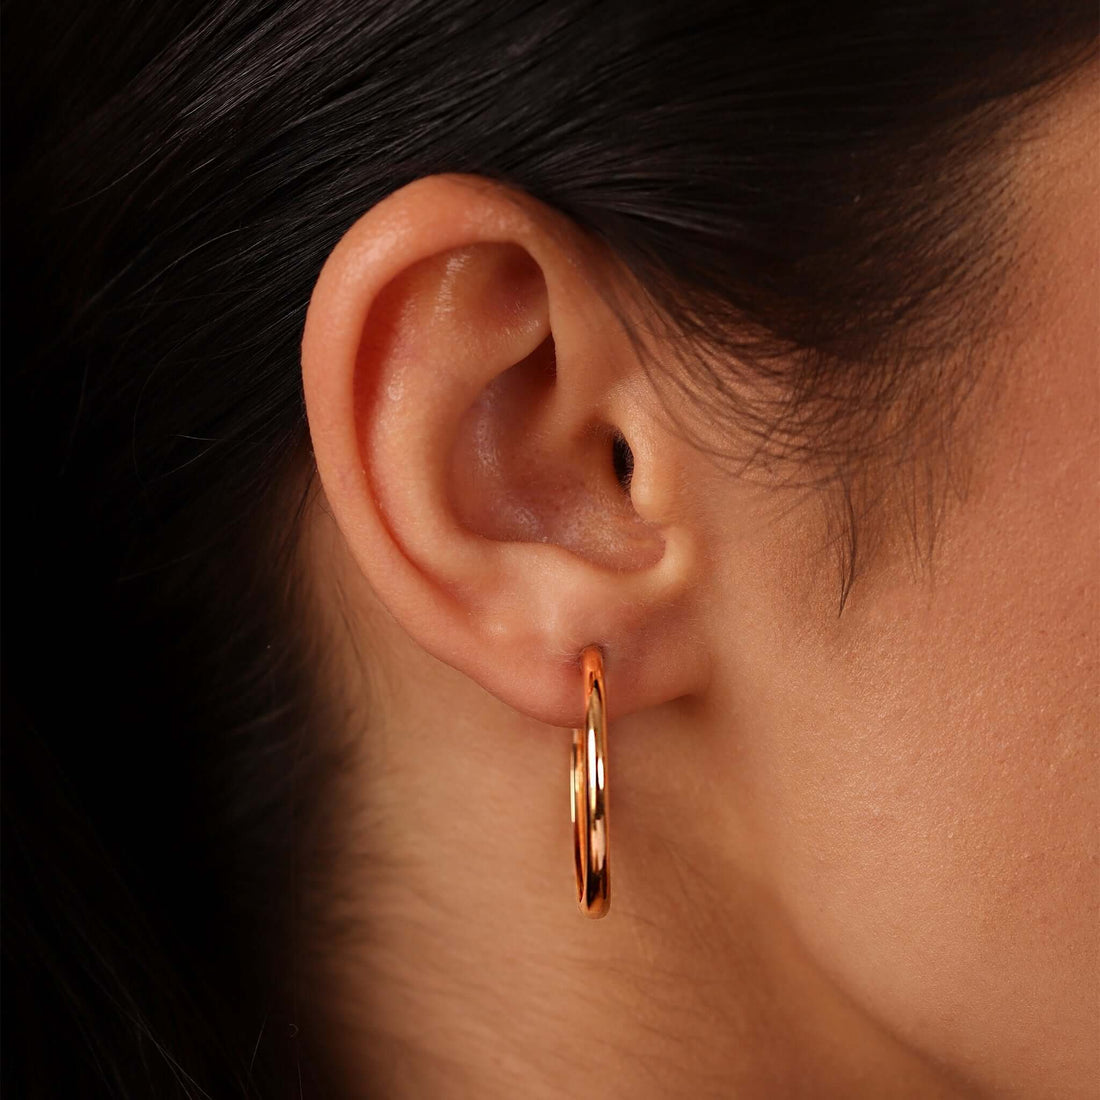 Jewelry ’s Classic Hoops | Gold Earrings | 14K - Rose / 3 cm Pair - earrings Zengoda Shop online from